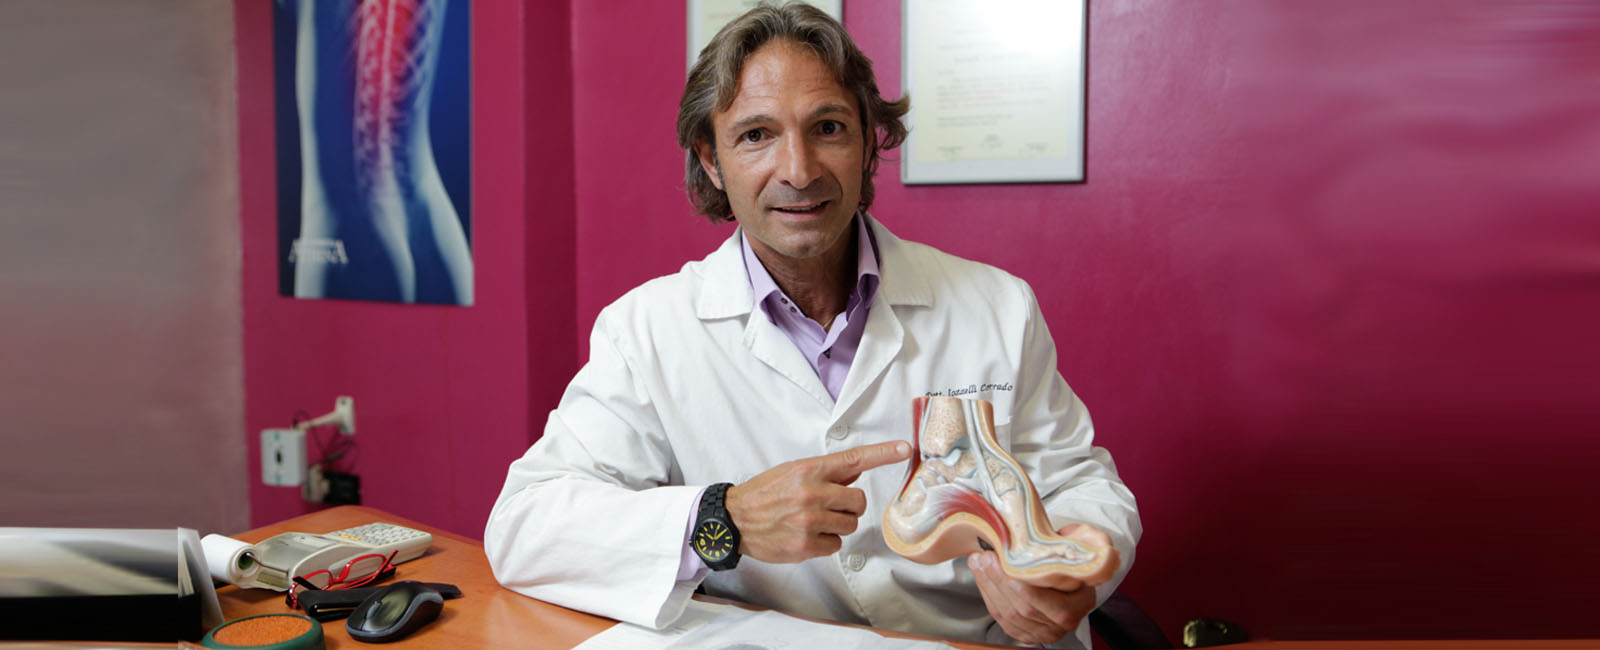 Dr. Corrado Iozzelli